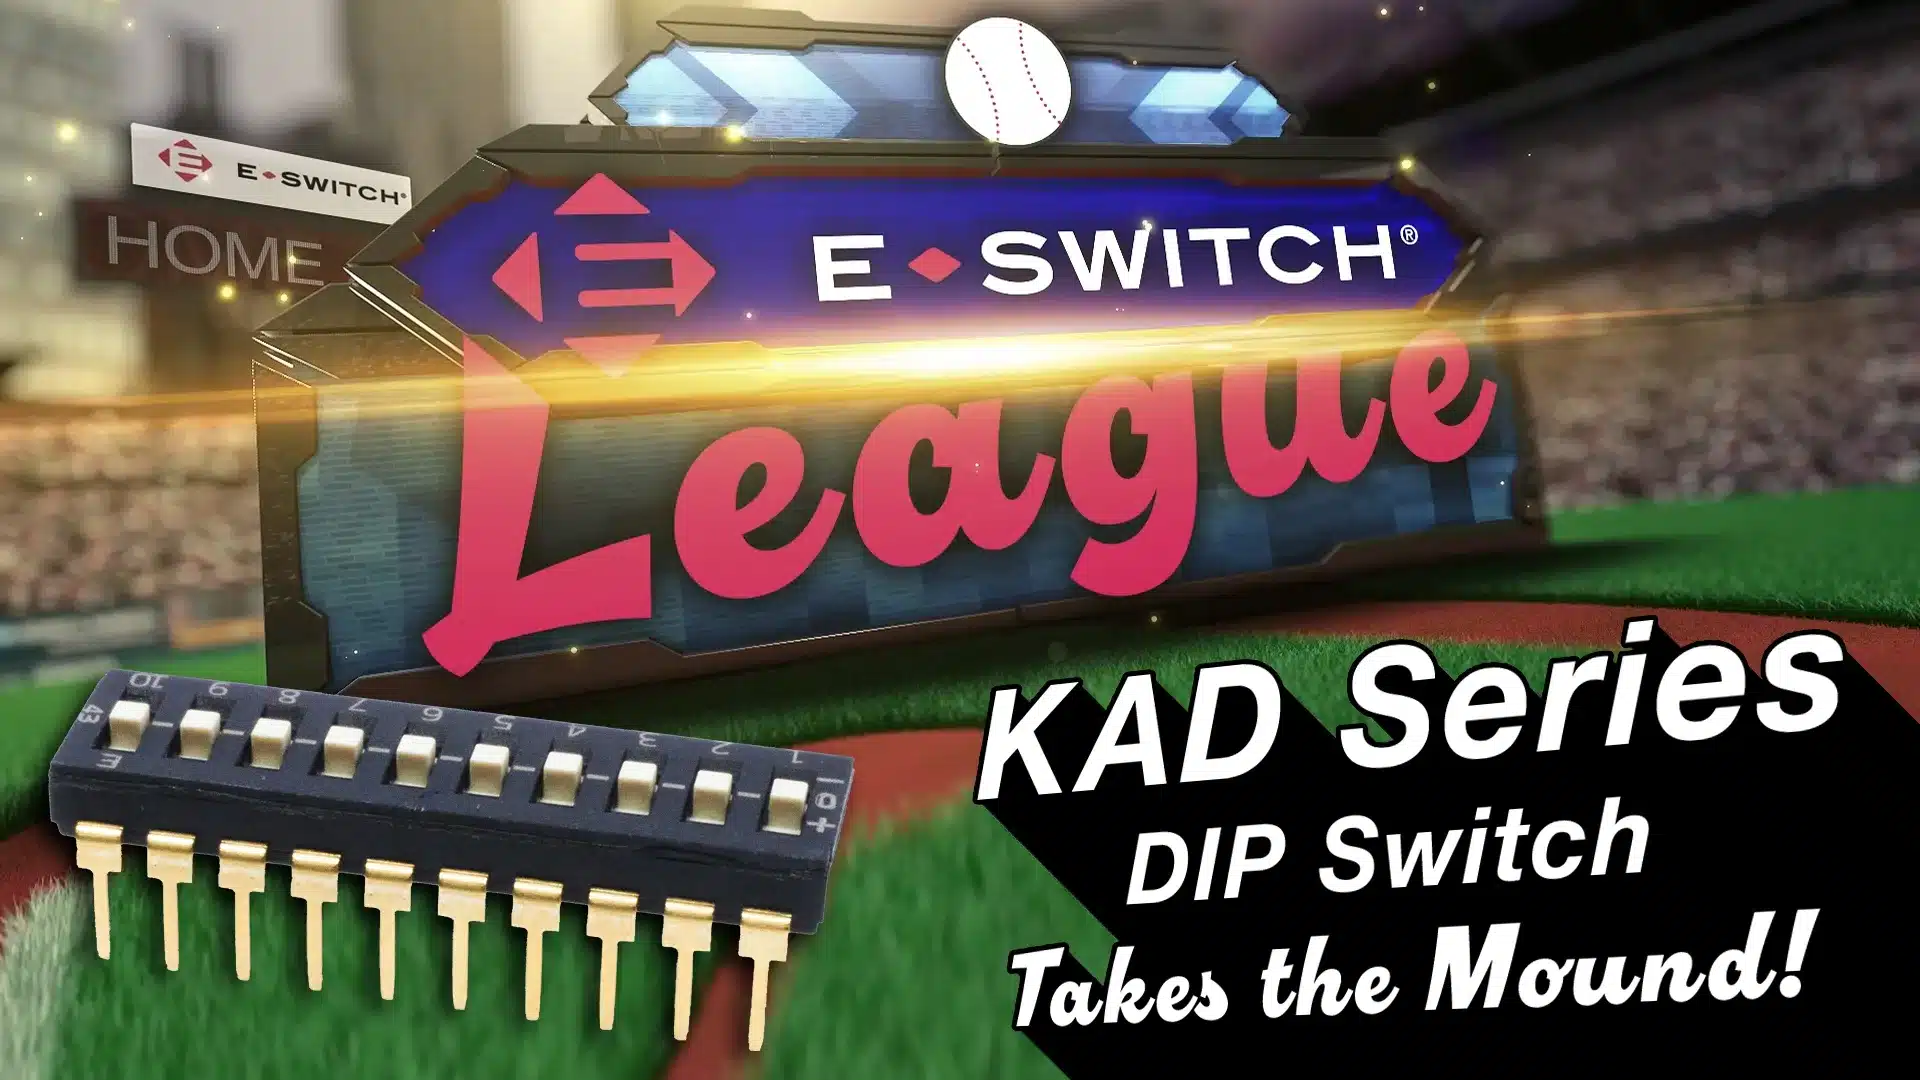 KAD Series tri-state DIP switch baseball debut